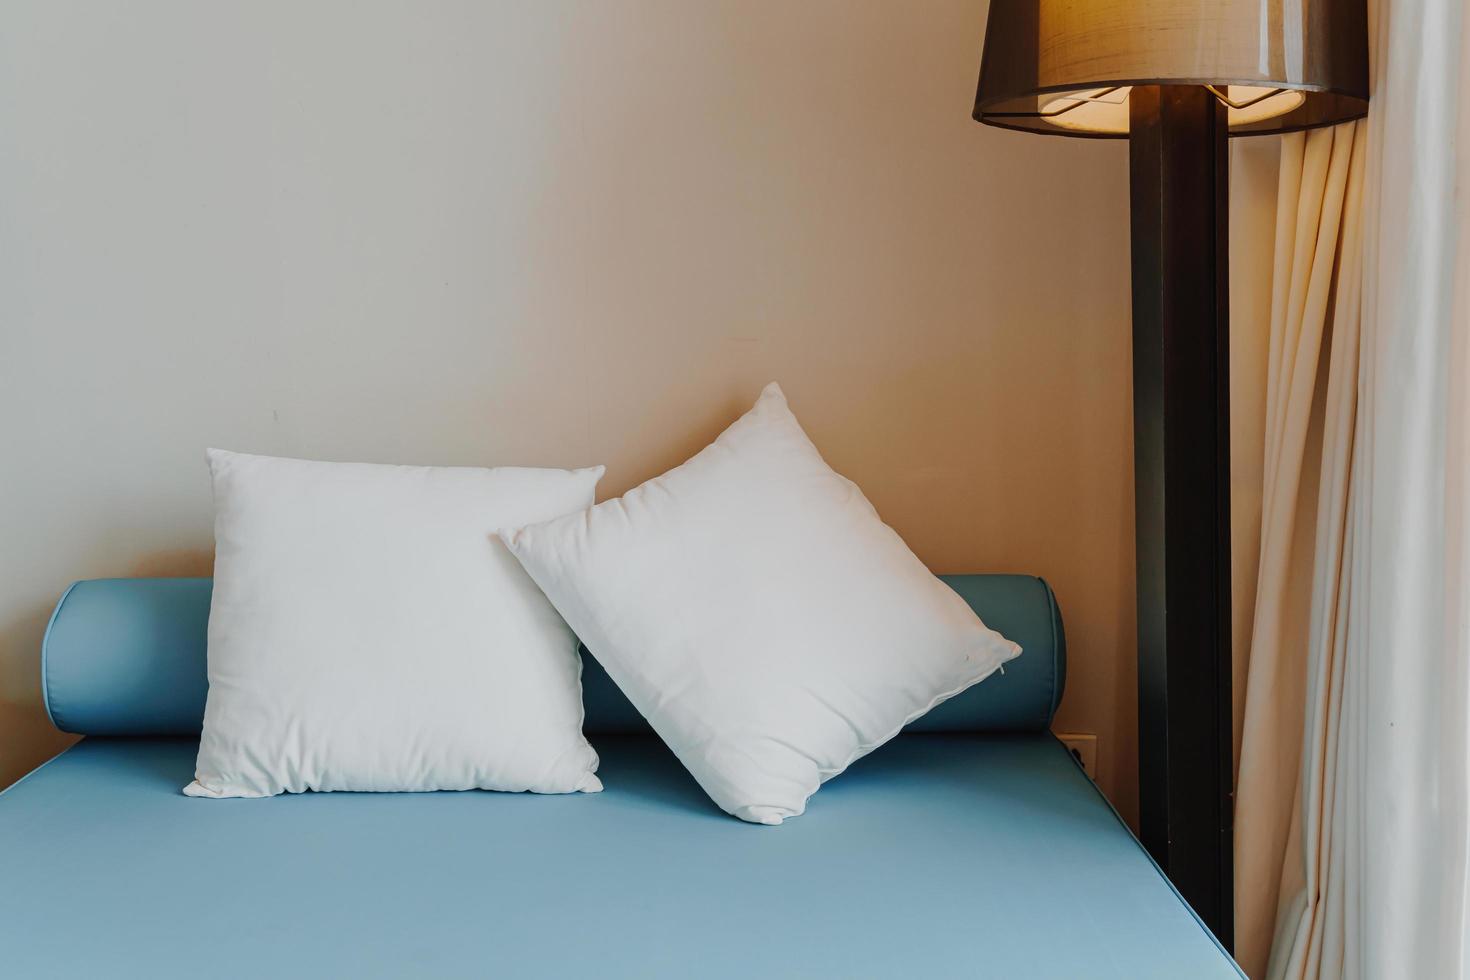 Hermosa y cómoda decoración de almohadas en el interior del dormitorio. foto